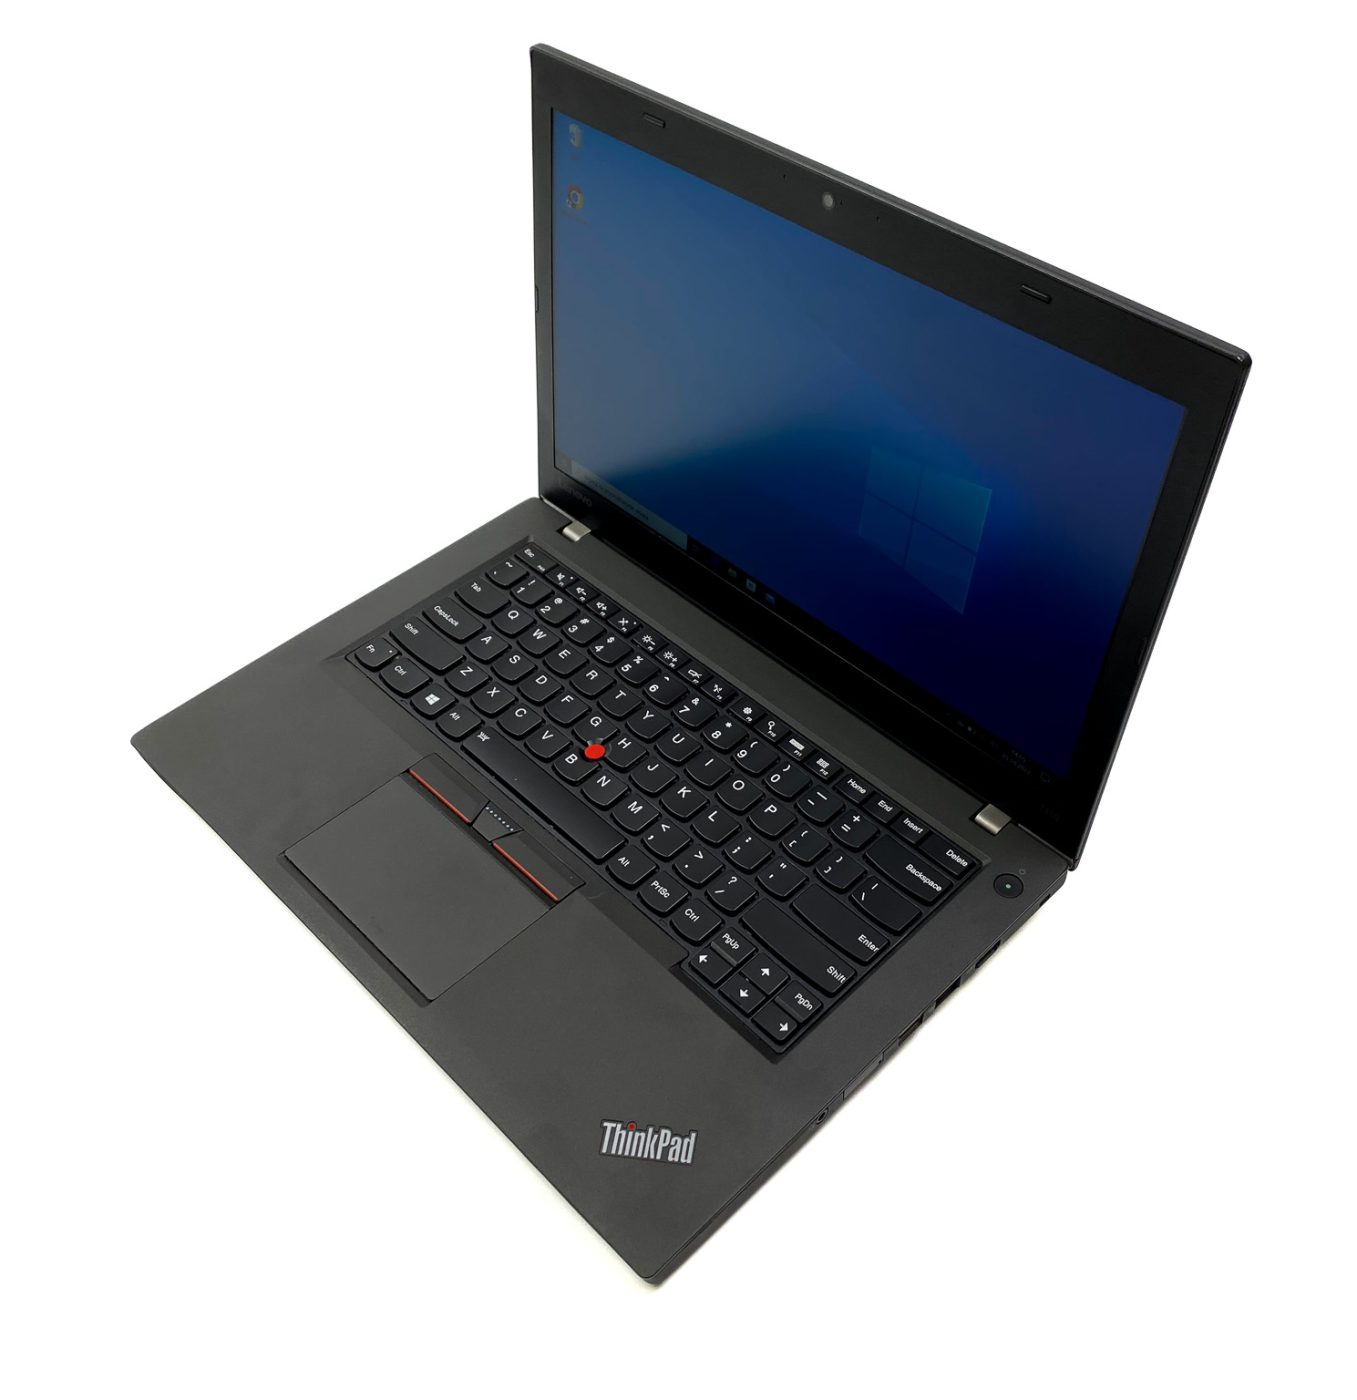 Lenovo ThinkPad T460 - idealny do biznesu i codziennego użytku